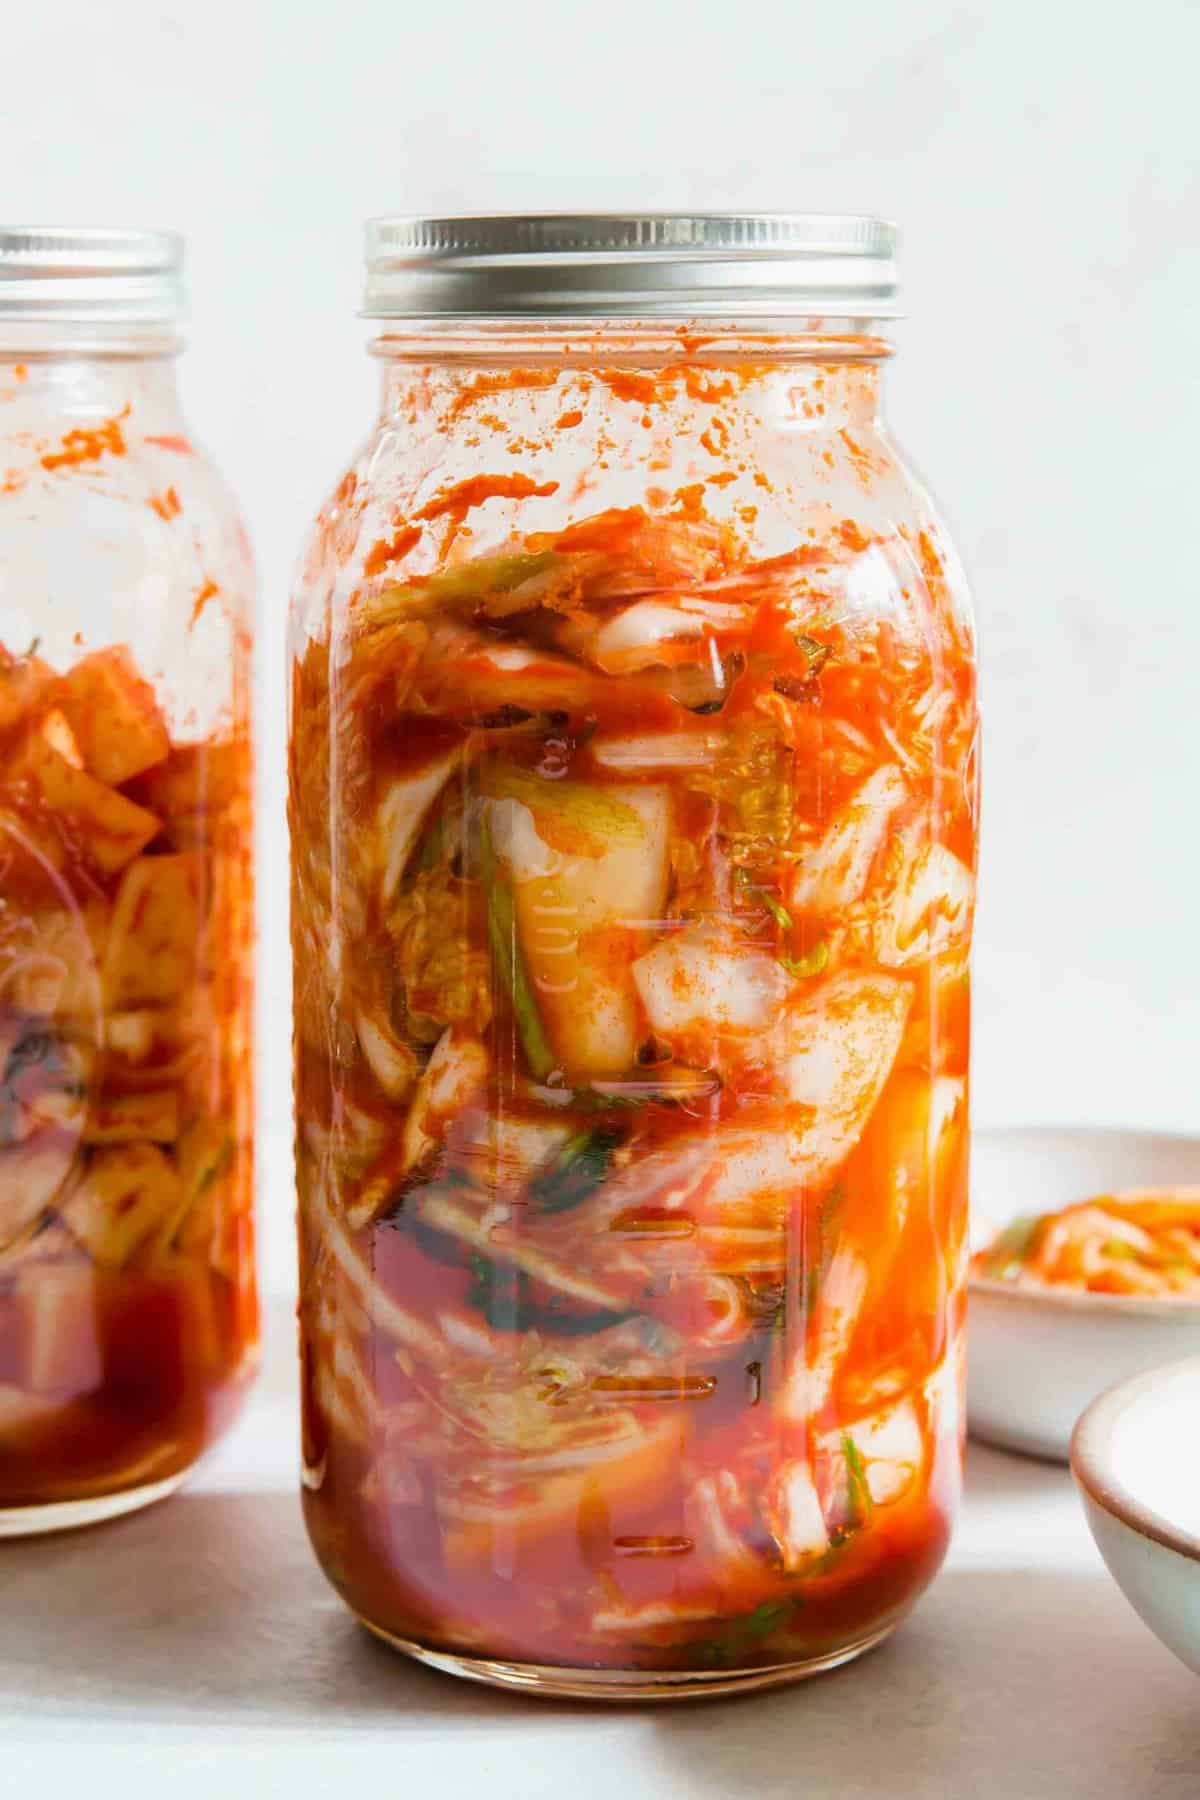 III. Health Benefits of Kimchi